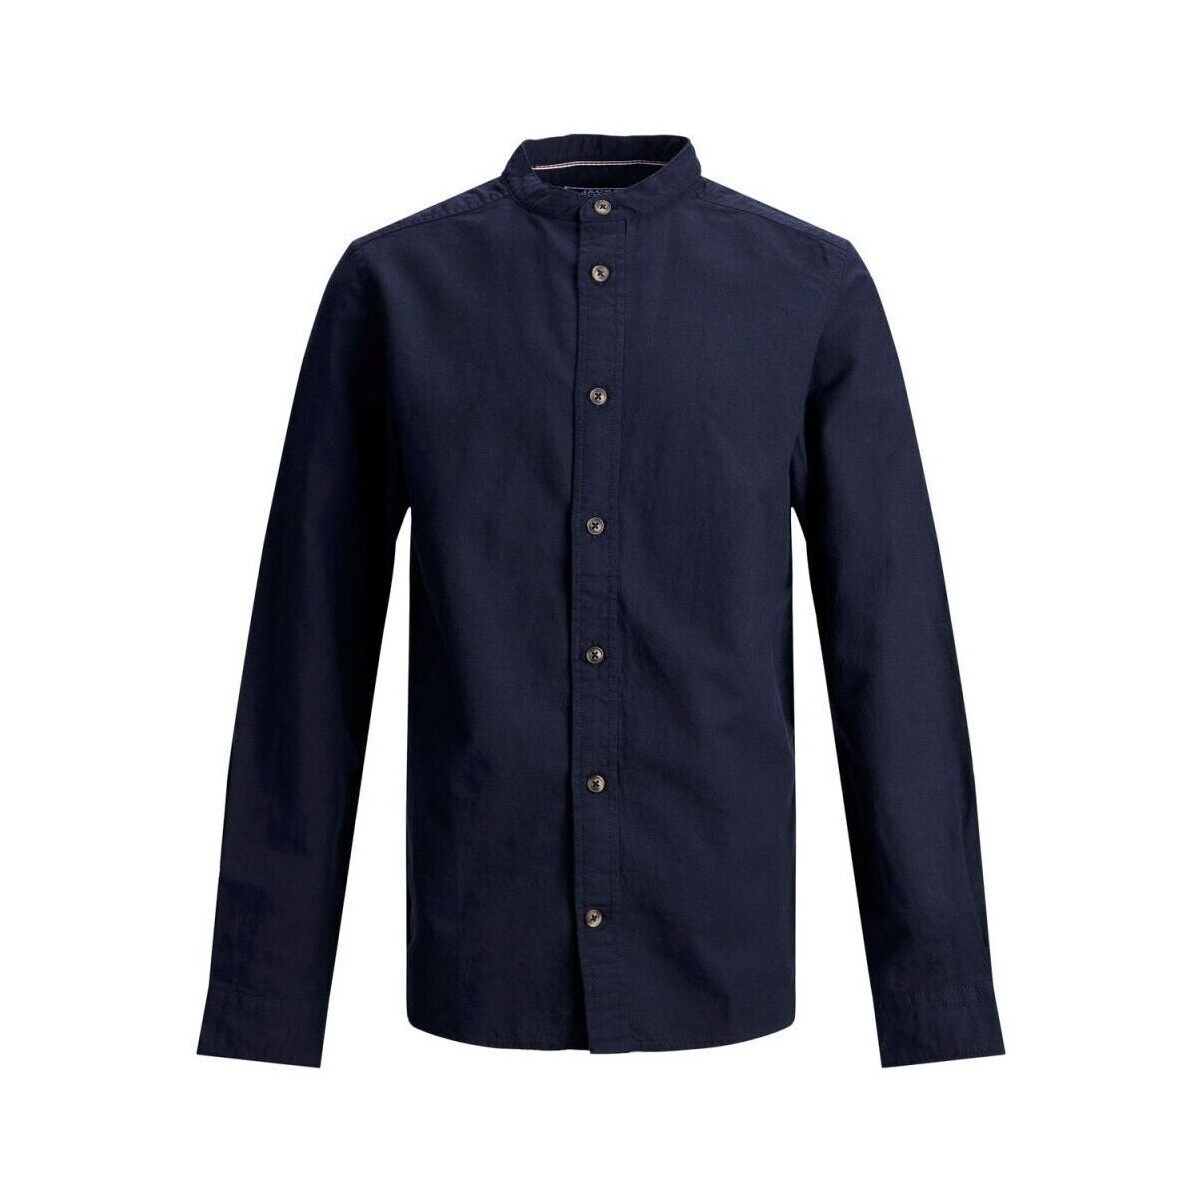 Vêtements Garçon Chemises manches longues Jack & Jones 12182017 BAND-NAVY BLAZER Bleu